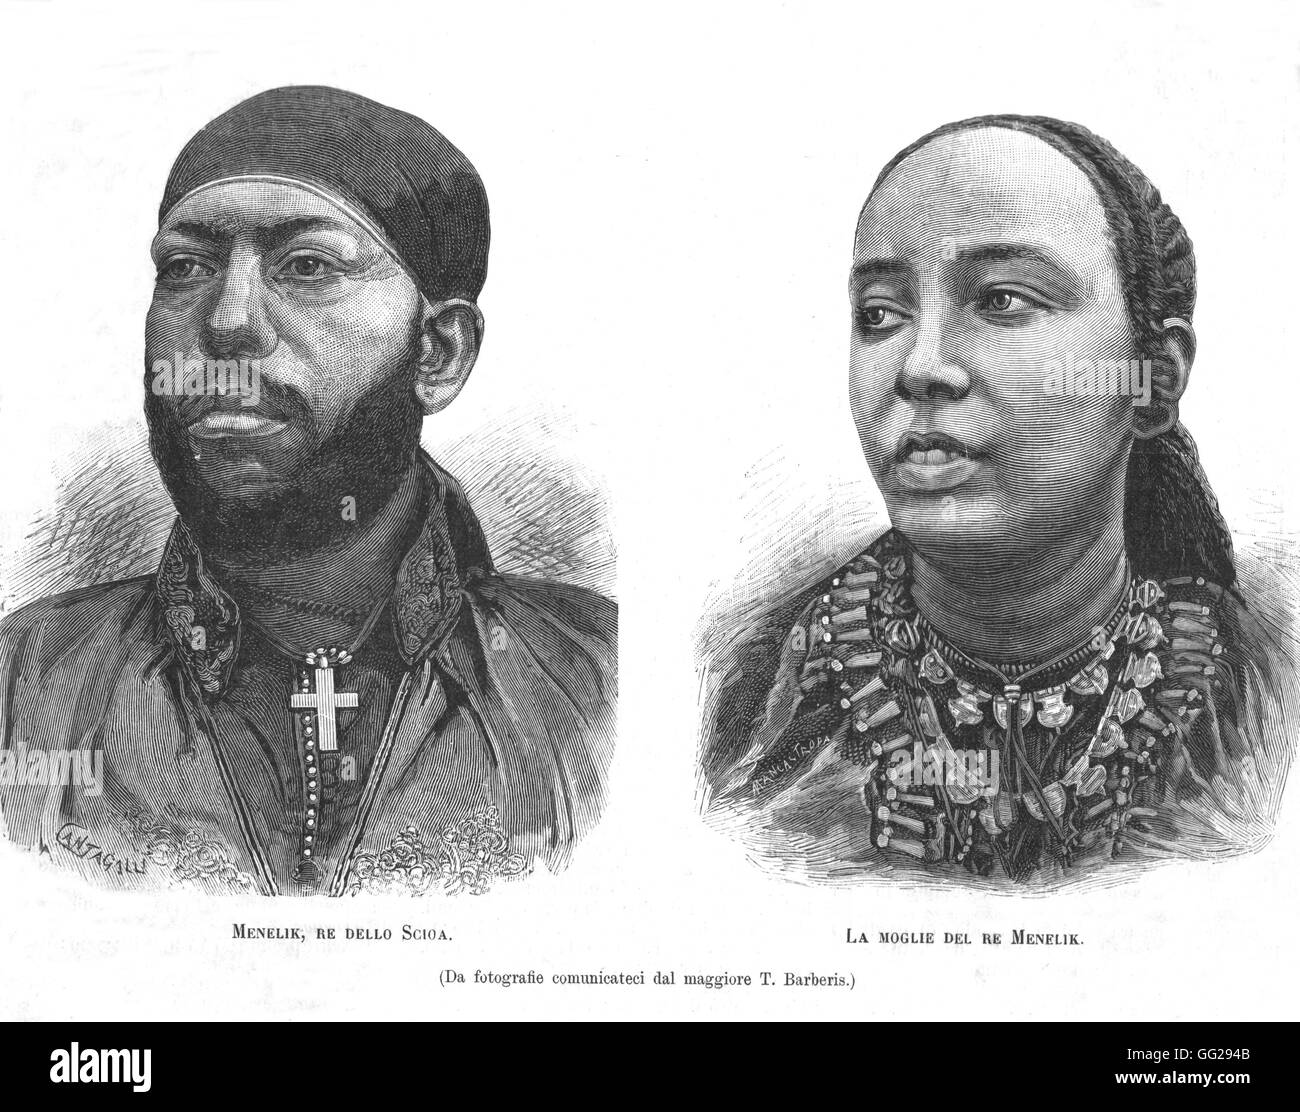 Menelik II, Emperador de Etiopía, y su esposa, en 'L'Illustrazione italiana' el 2 de febrero de 1887, Etiopía (Abisinia) Foto de stock